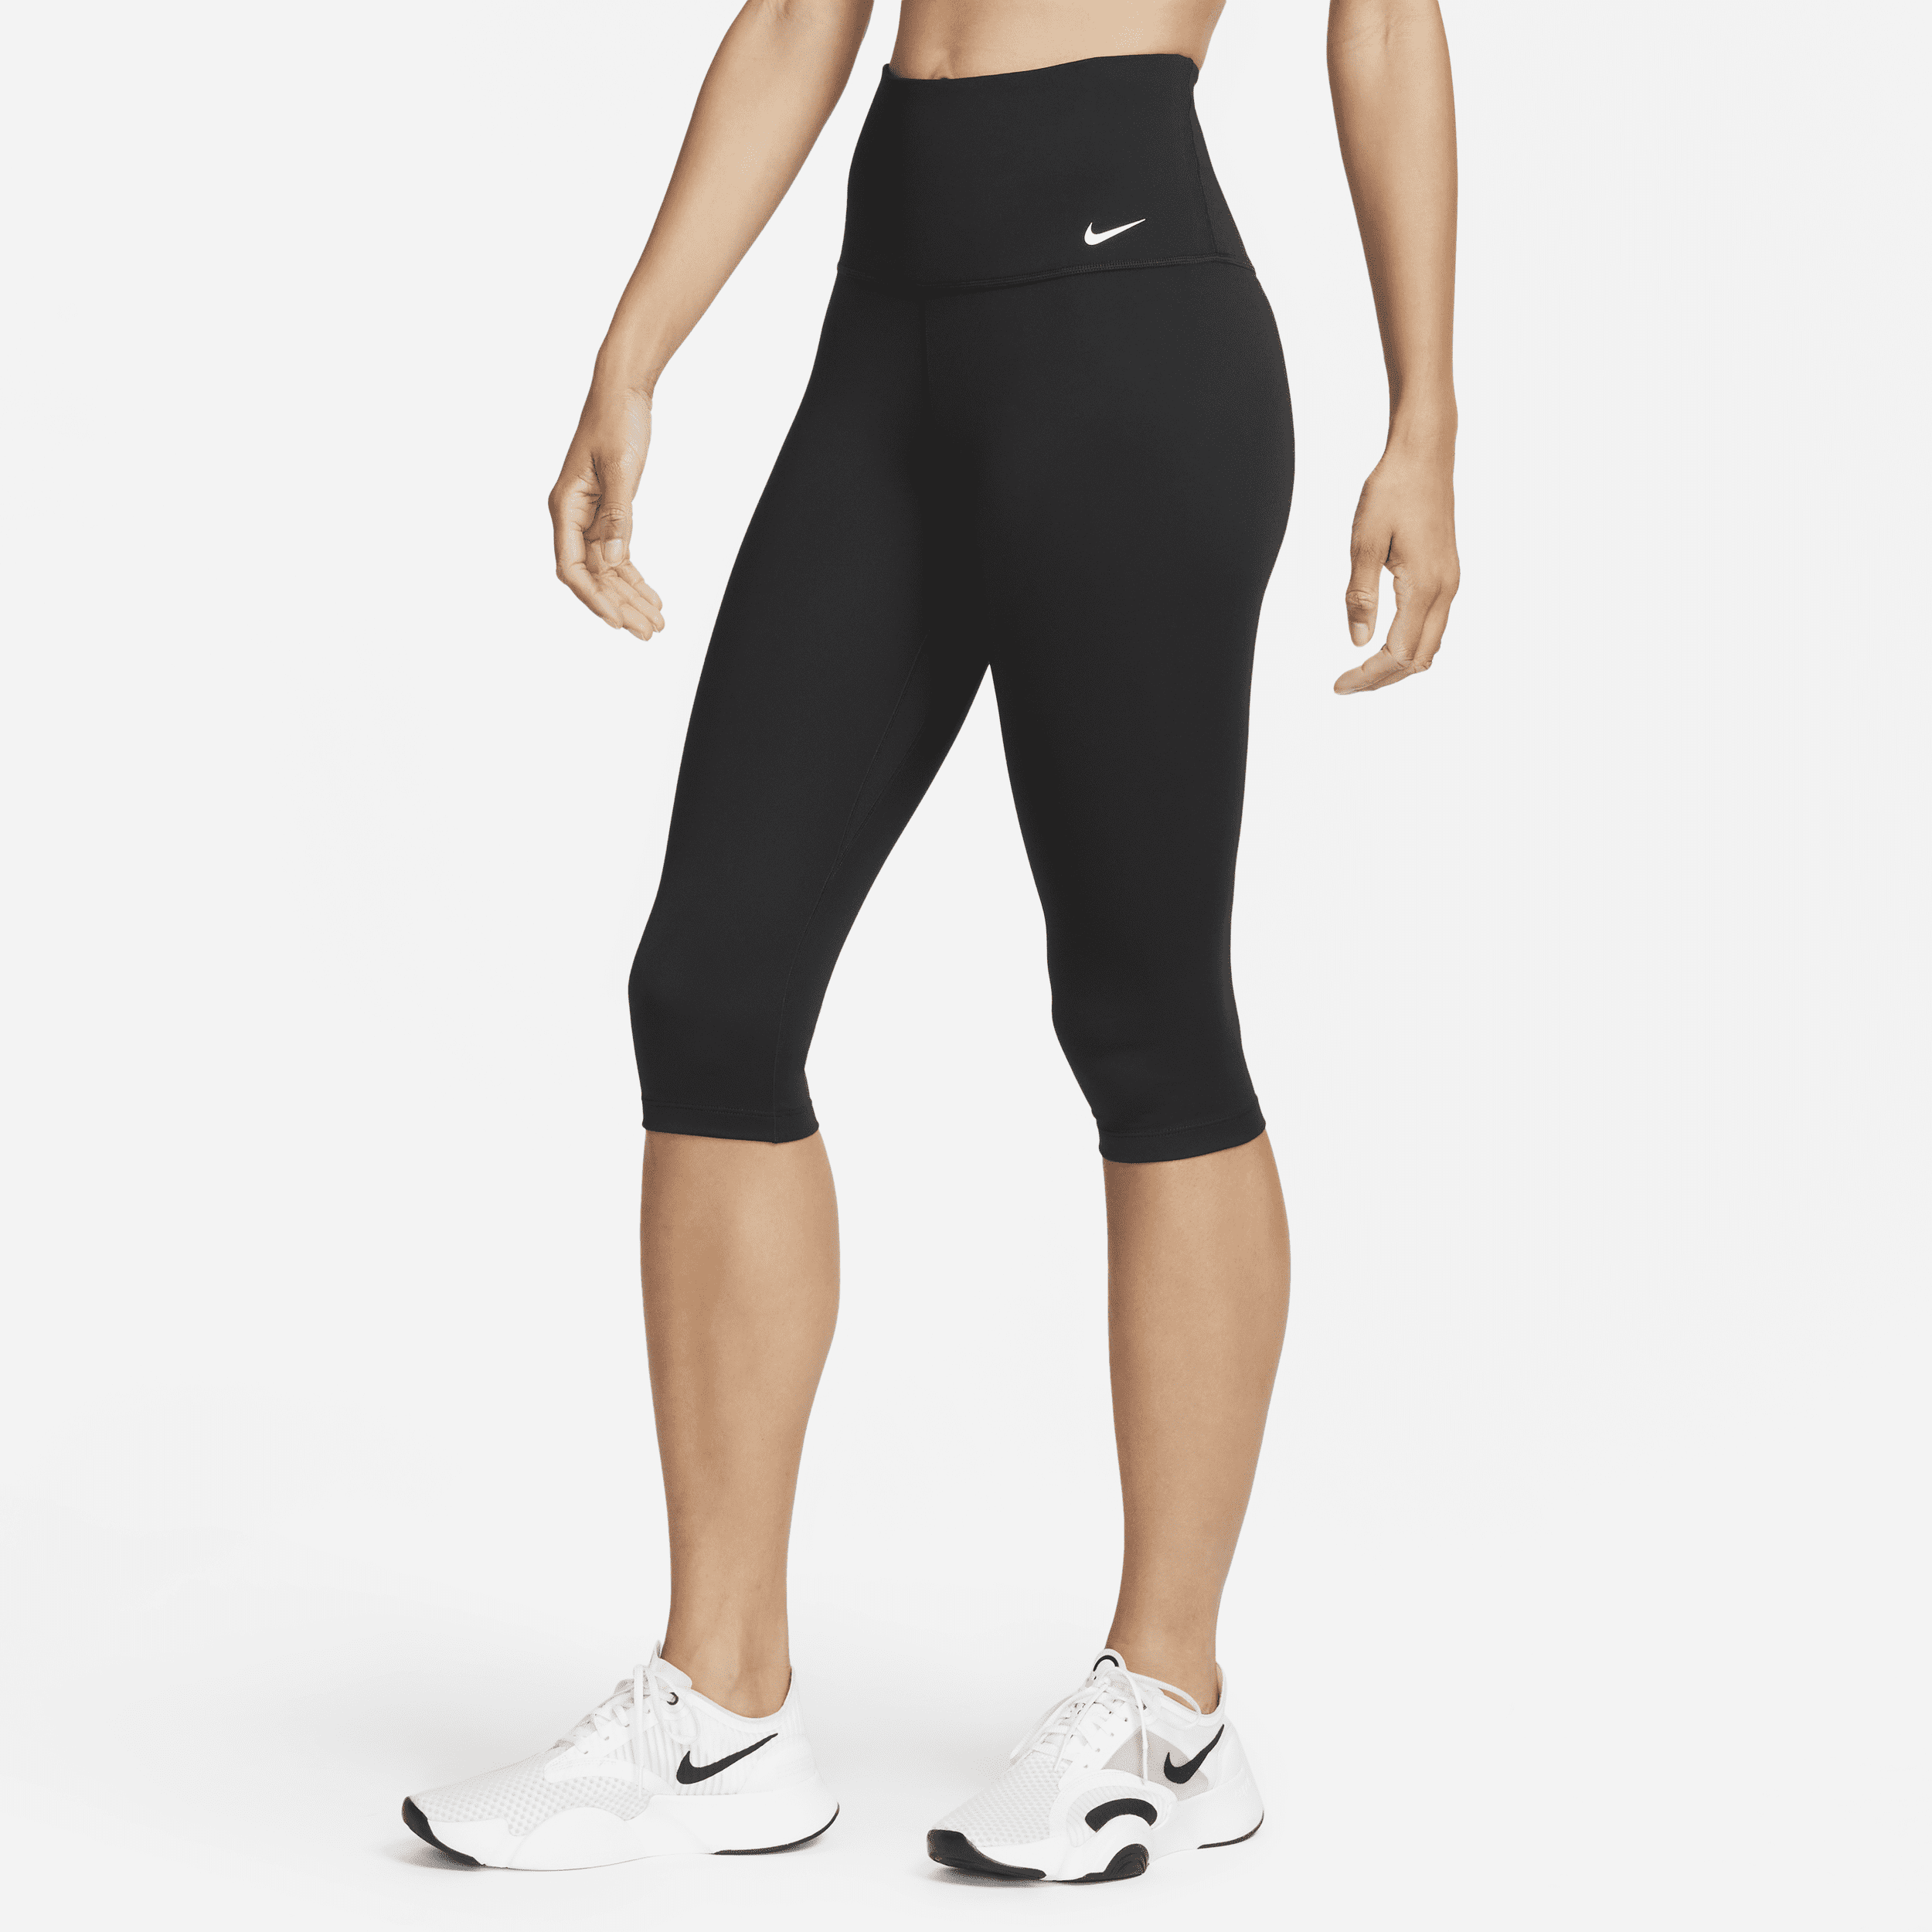 Nike One Caprilegging met hoge taille voor dames - Zwart